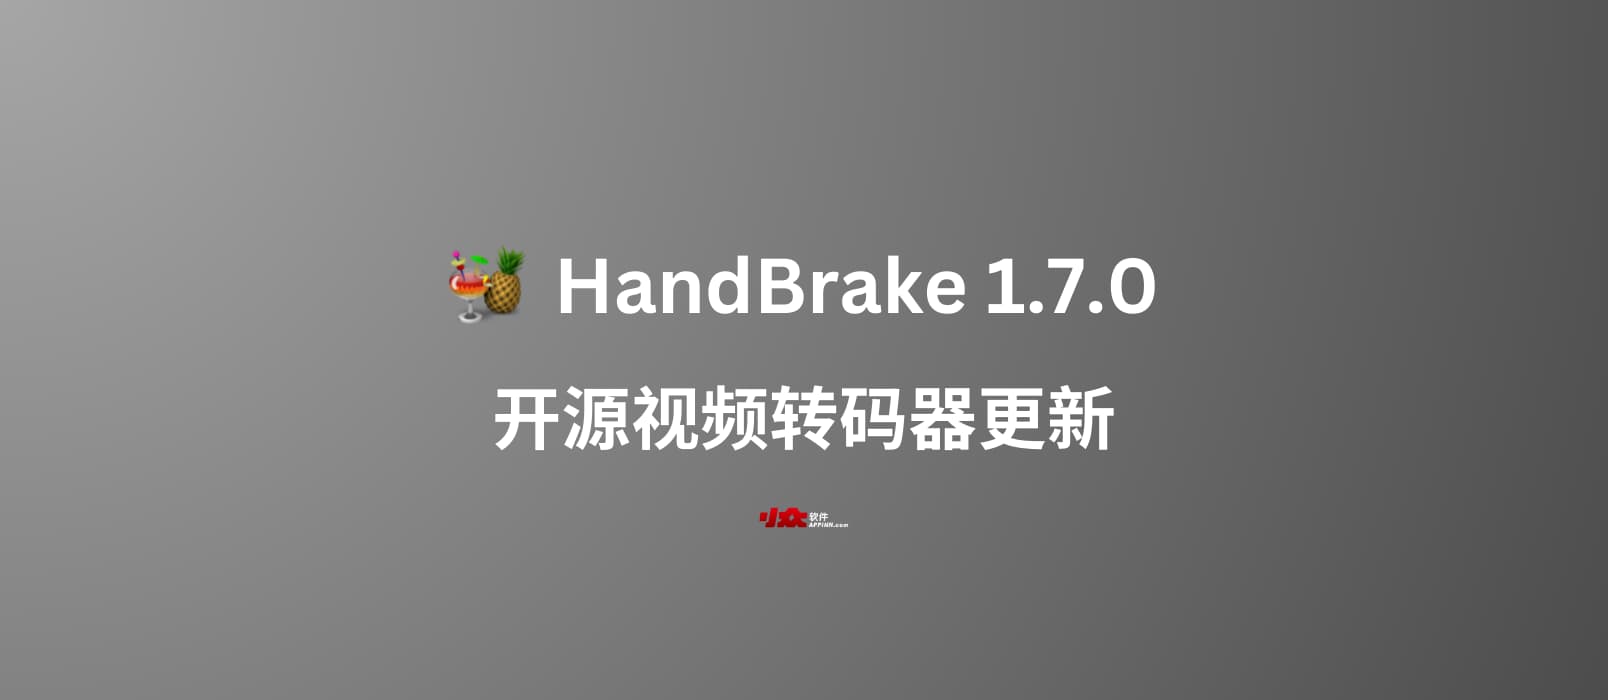 开源视频转码器 HandBrake 1.7.0 发布